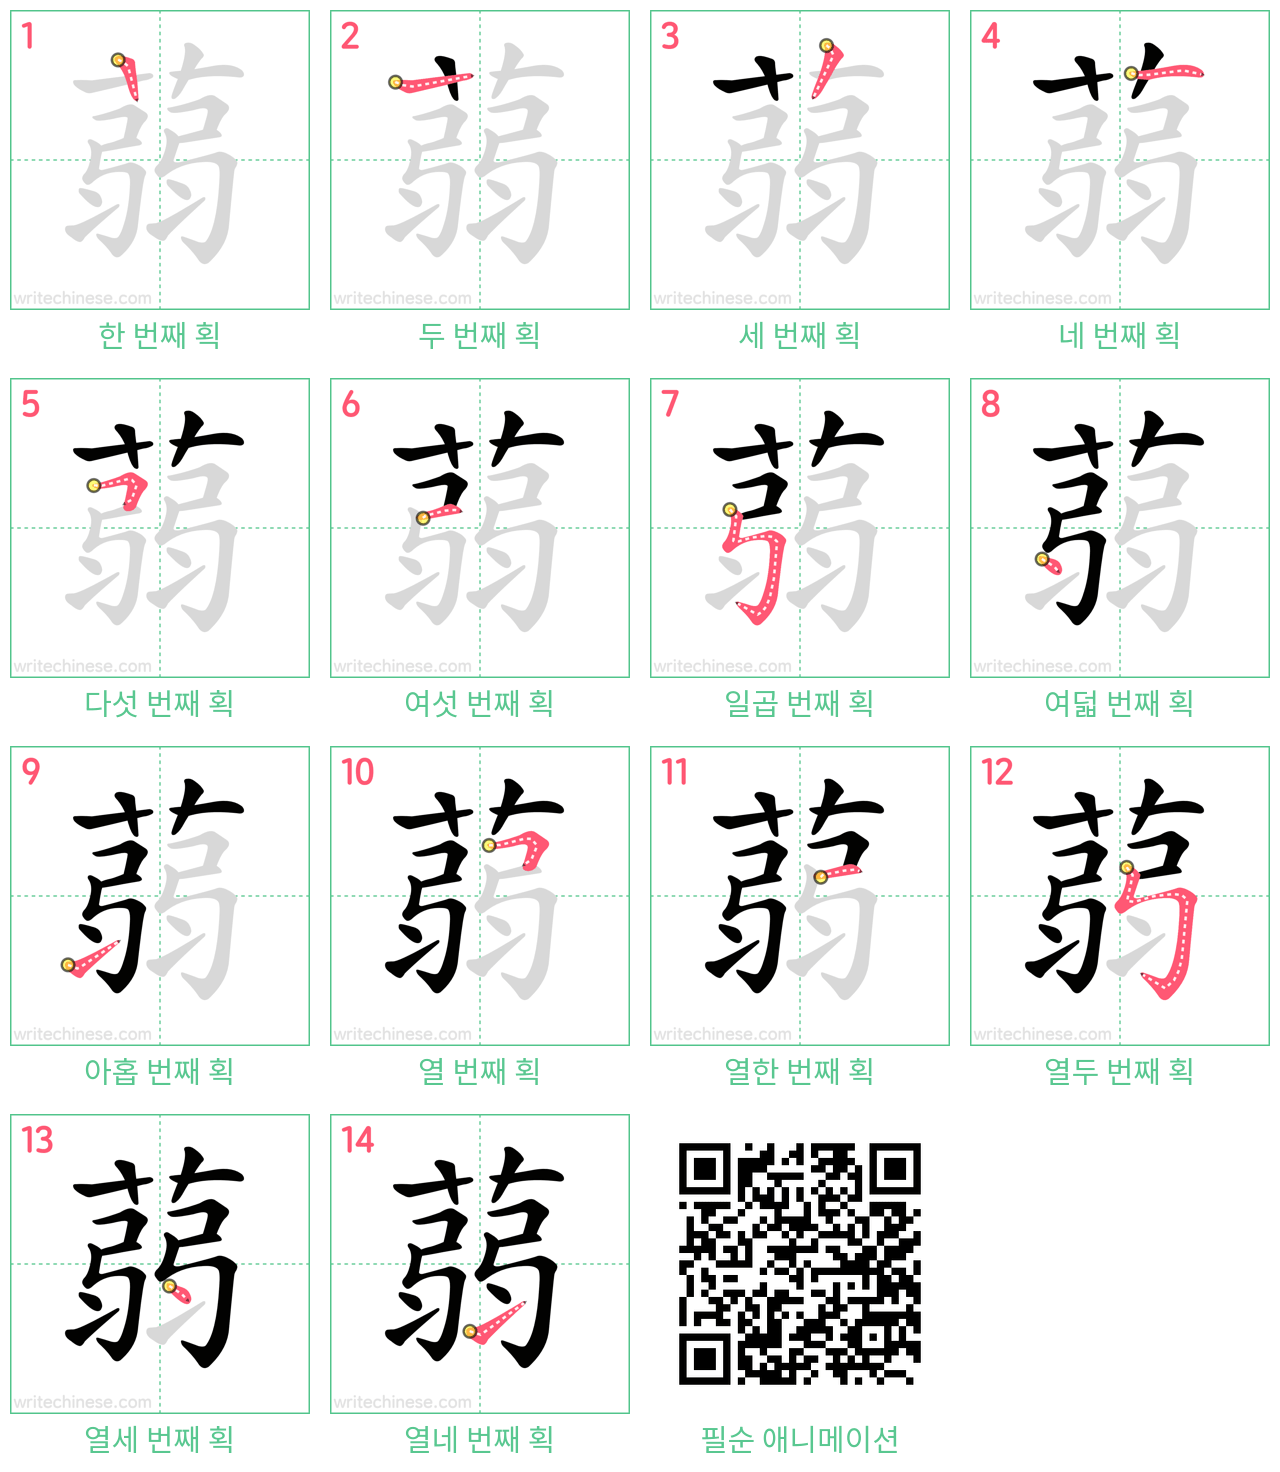 蒻 step-by-step stroke order diagrams